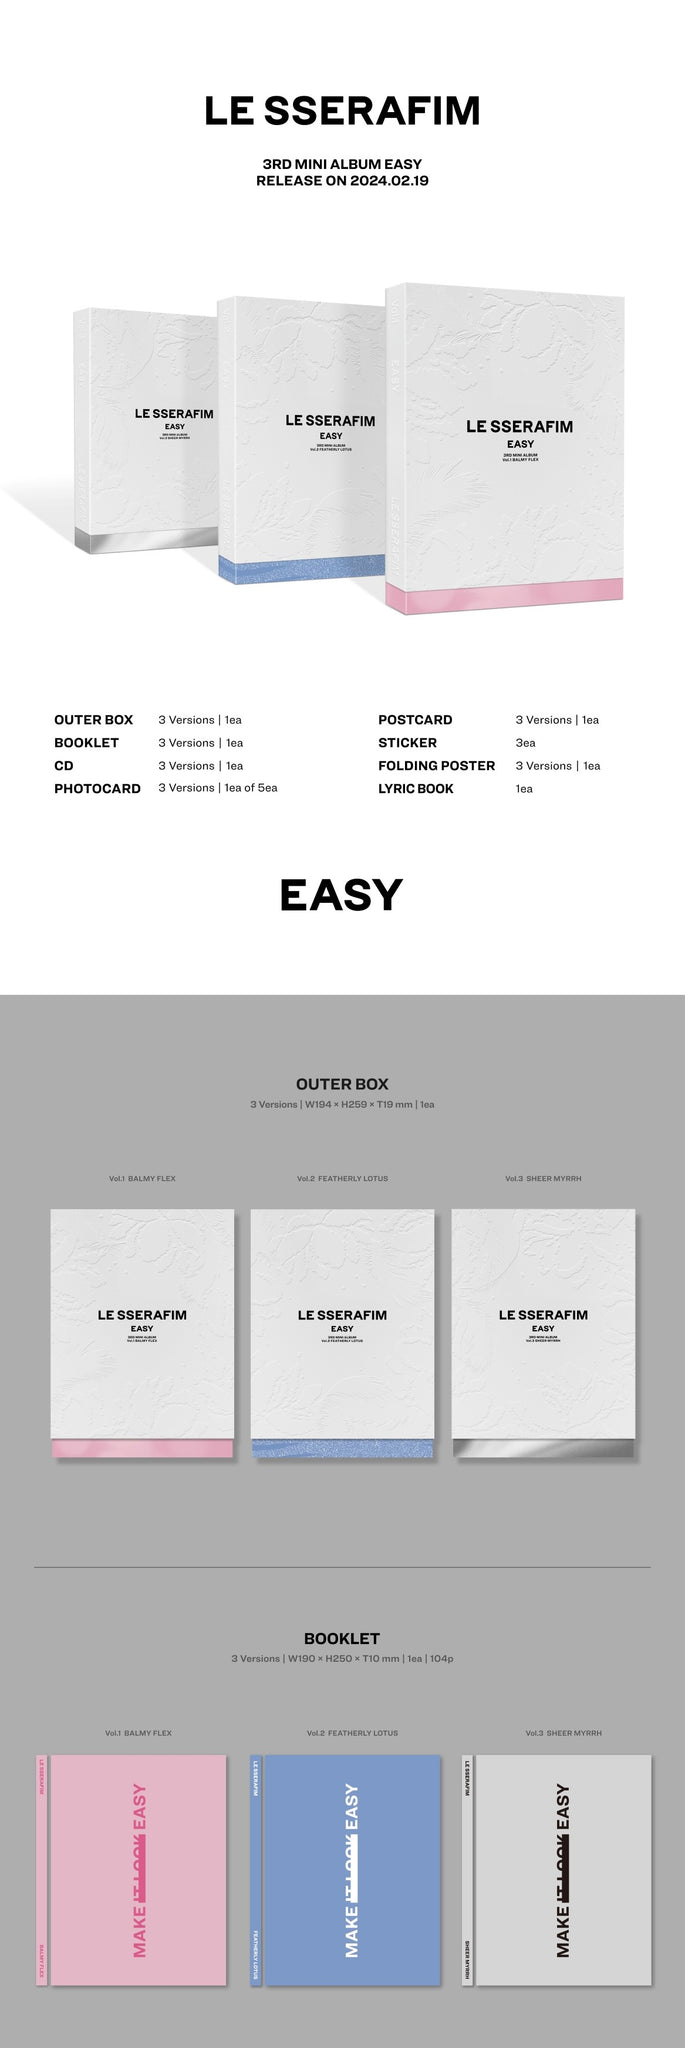 LE SSERAFIM 3rd Mini Album EASY Inclusions Outer Box Booklet